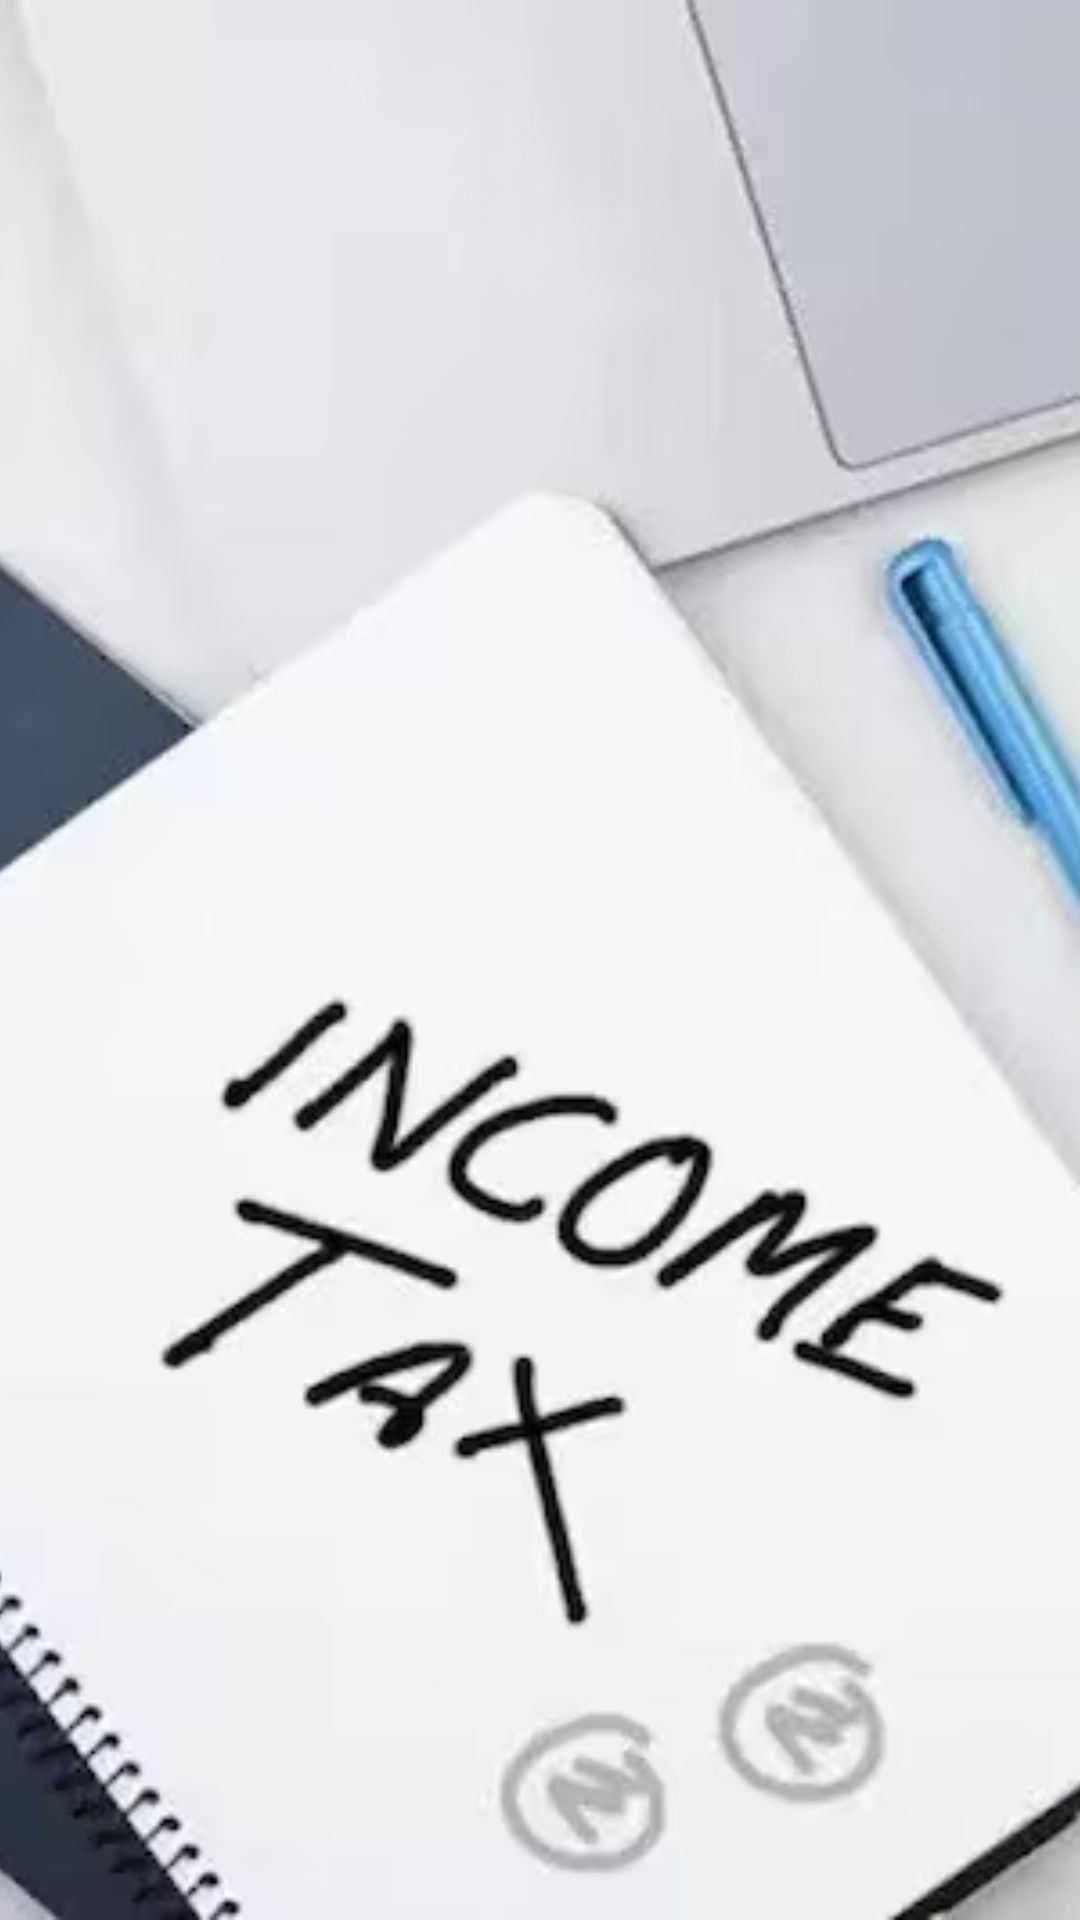 भारत के इस राज्य के निवासी नहीं देते Income Tax